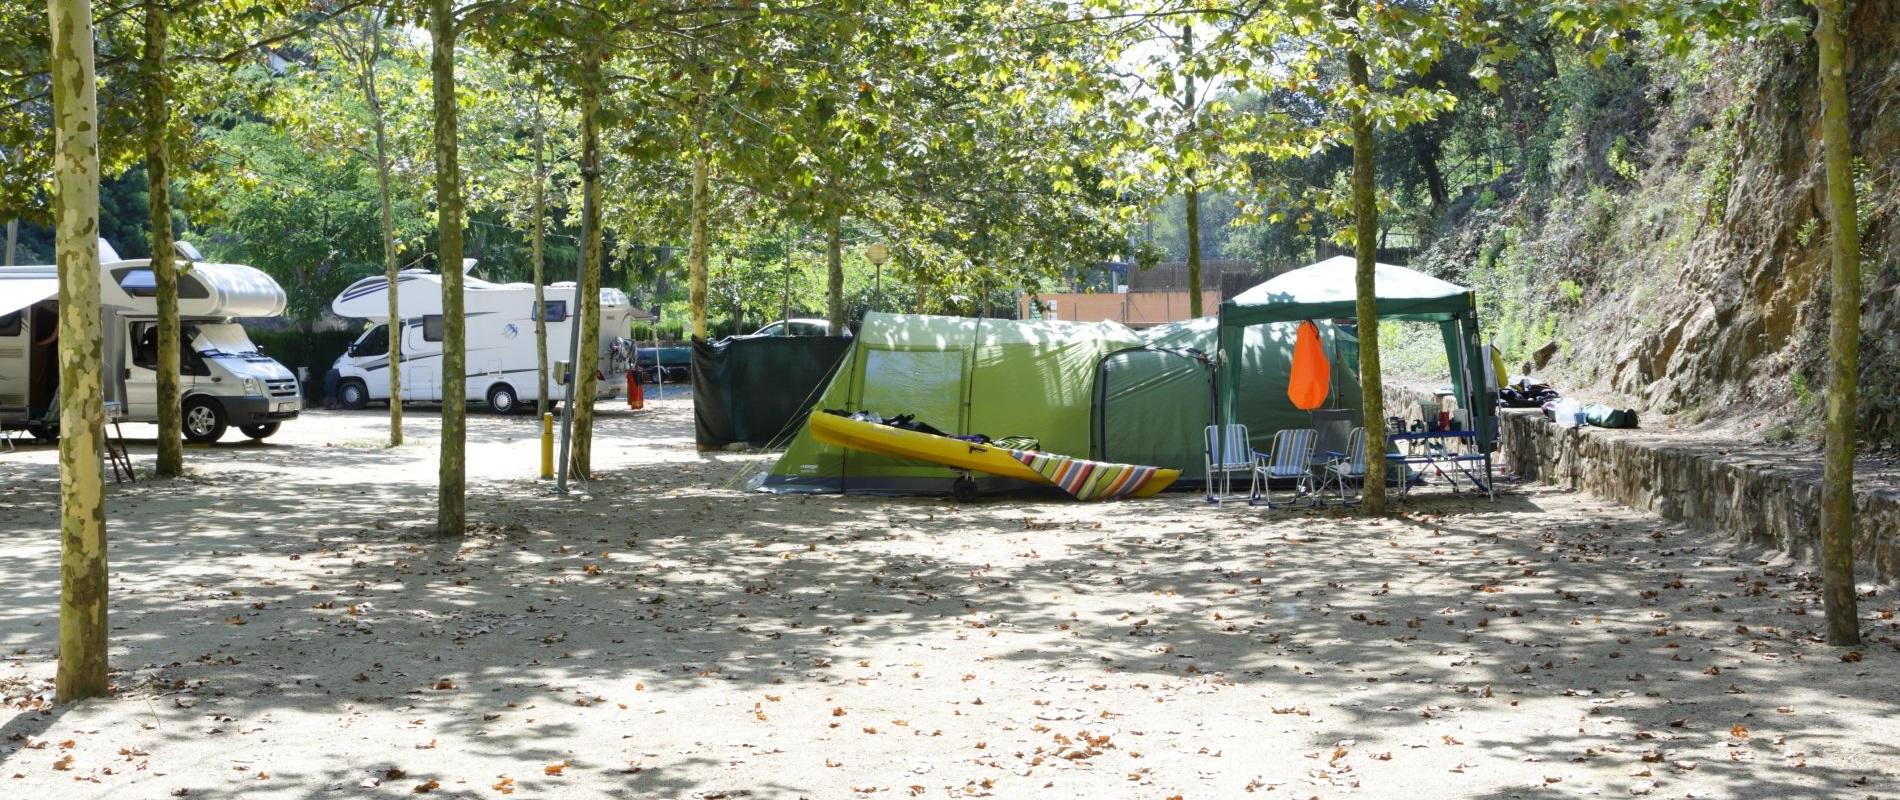 Camping per a Autocaravanes i caravanes grans